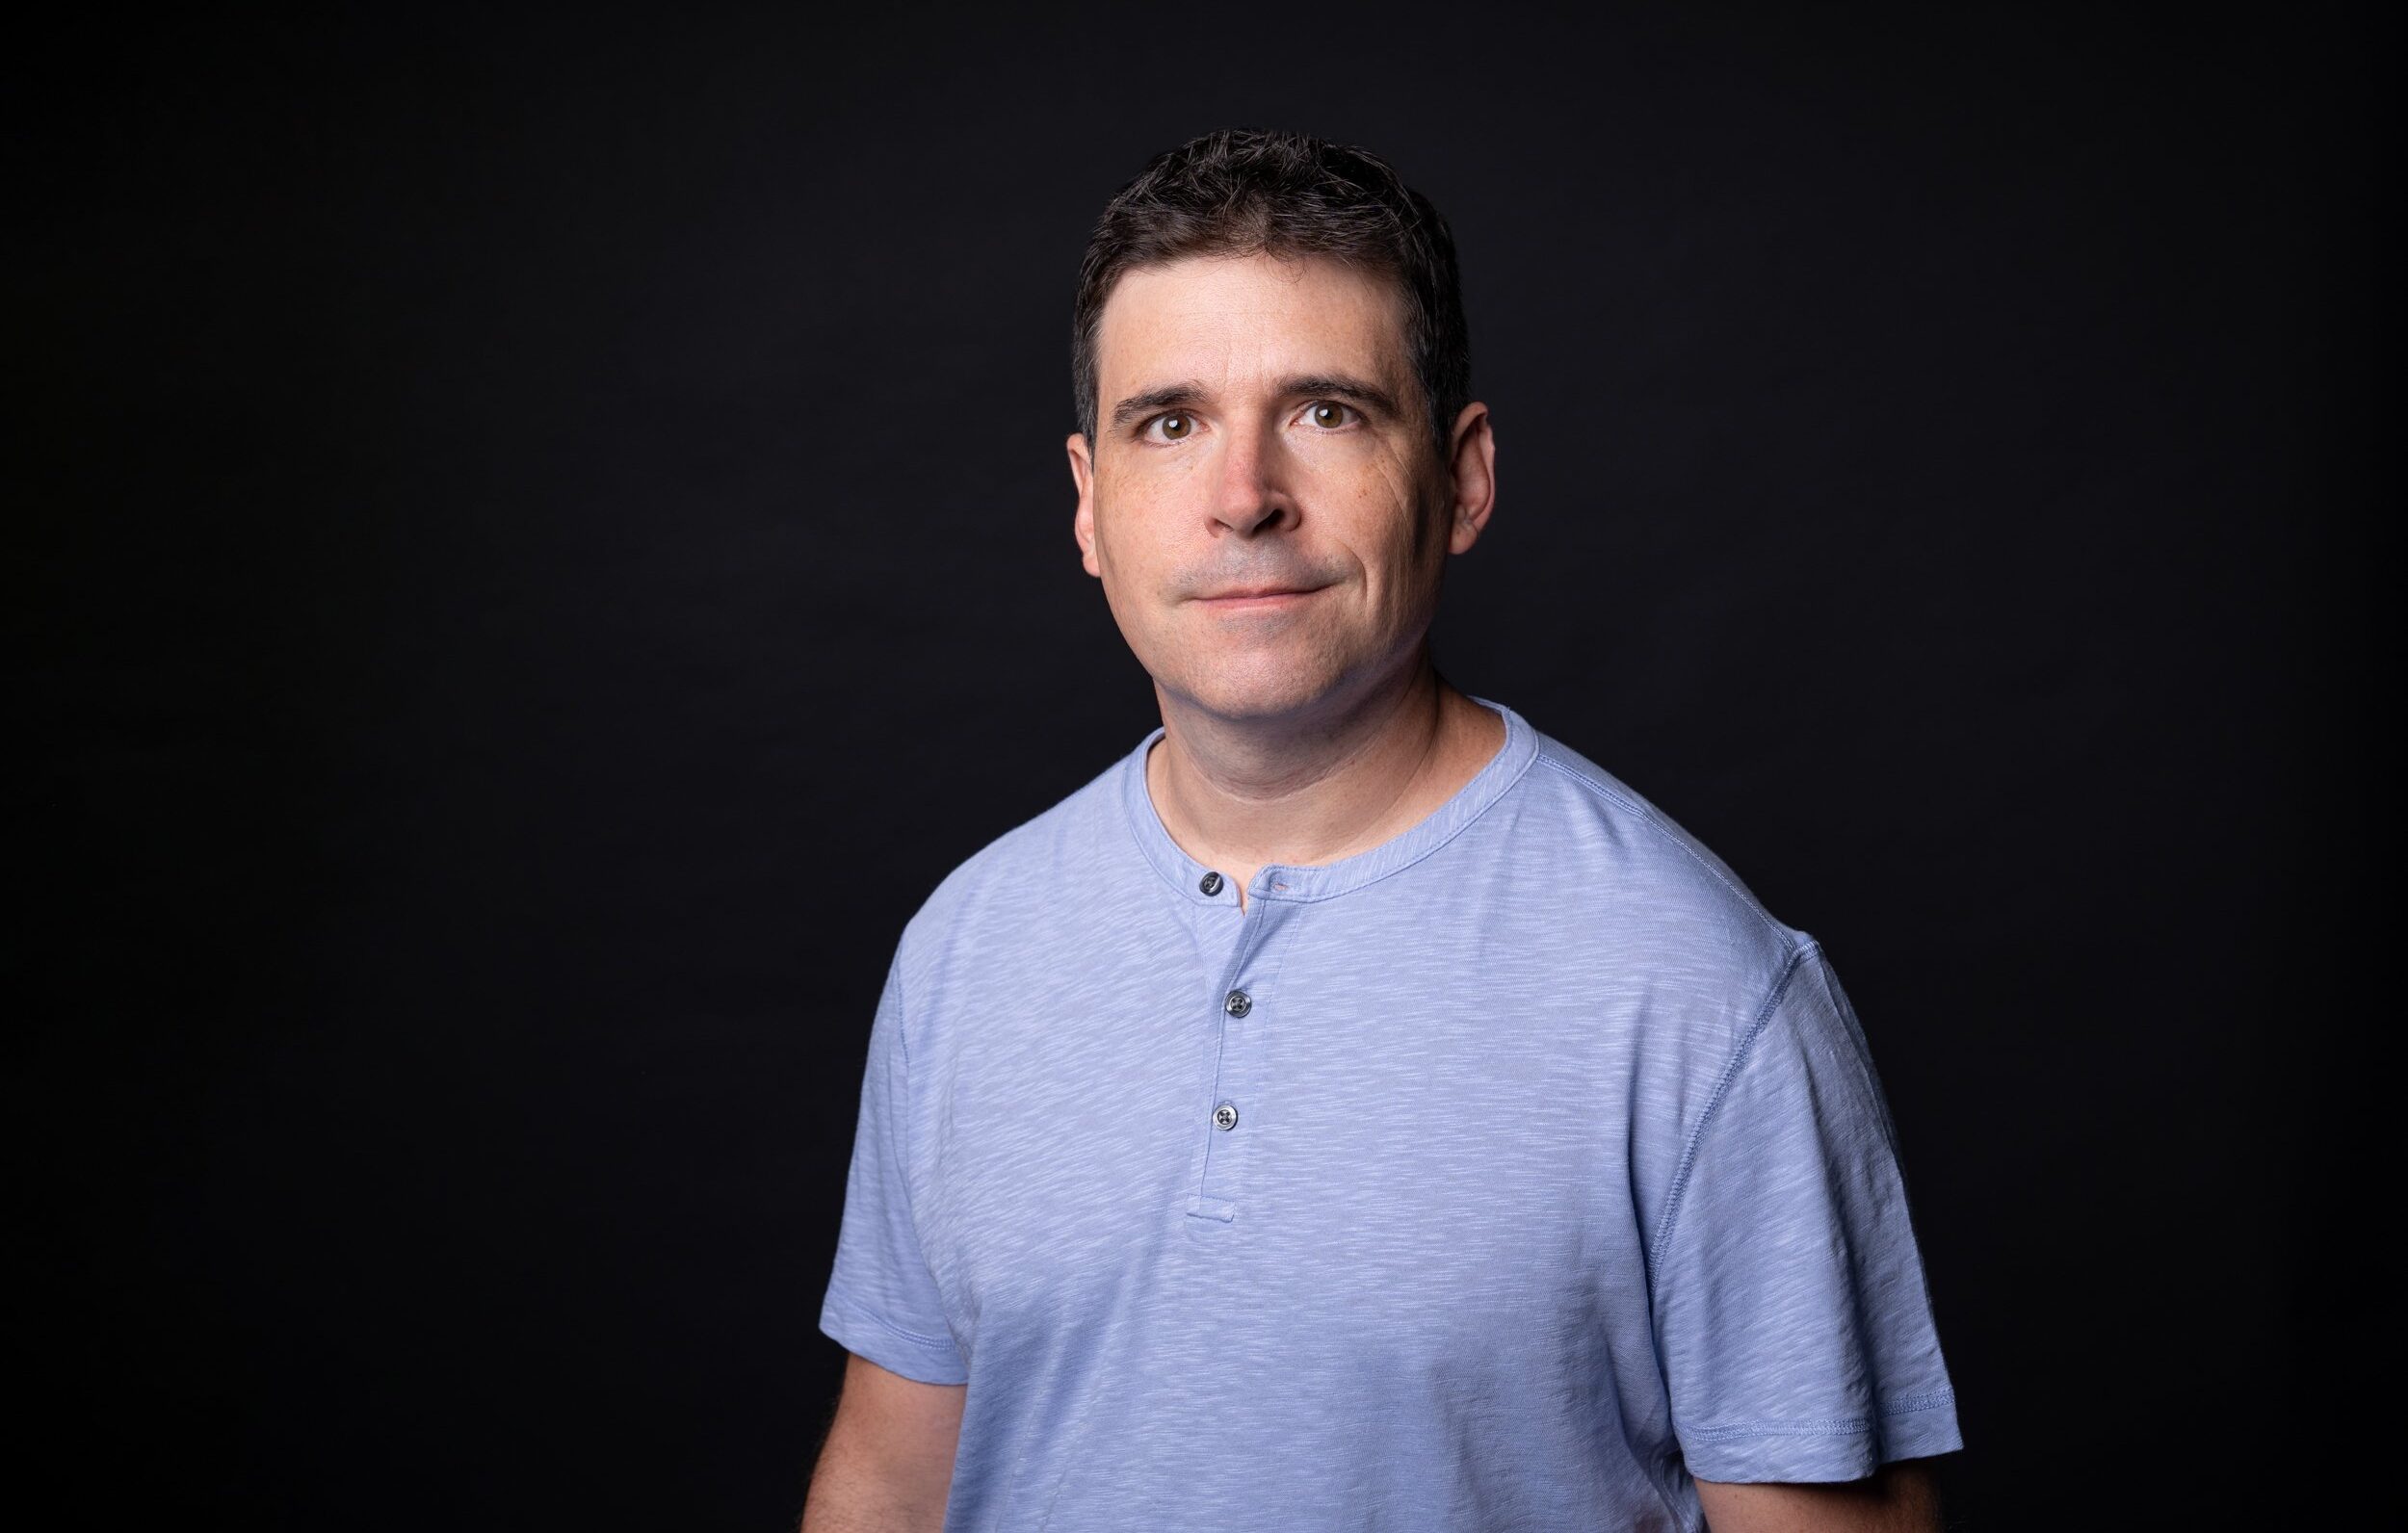 Meet Matt Meyers: A Top Expert for the Salesforce Ecosystem Making His Mark